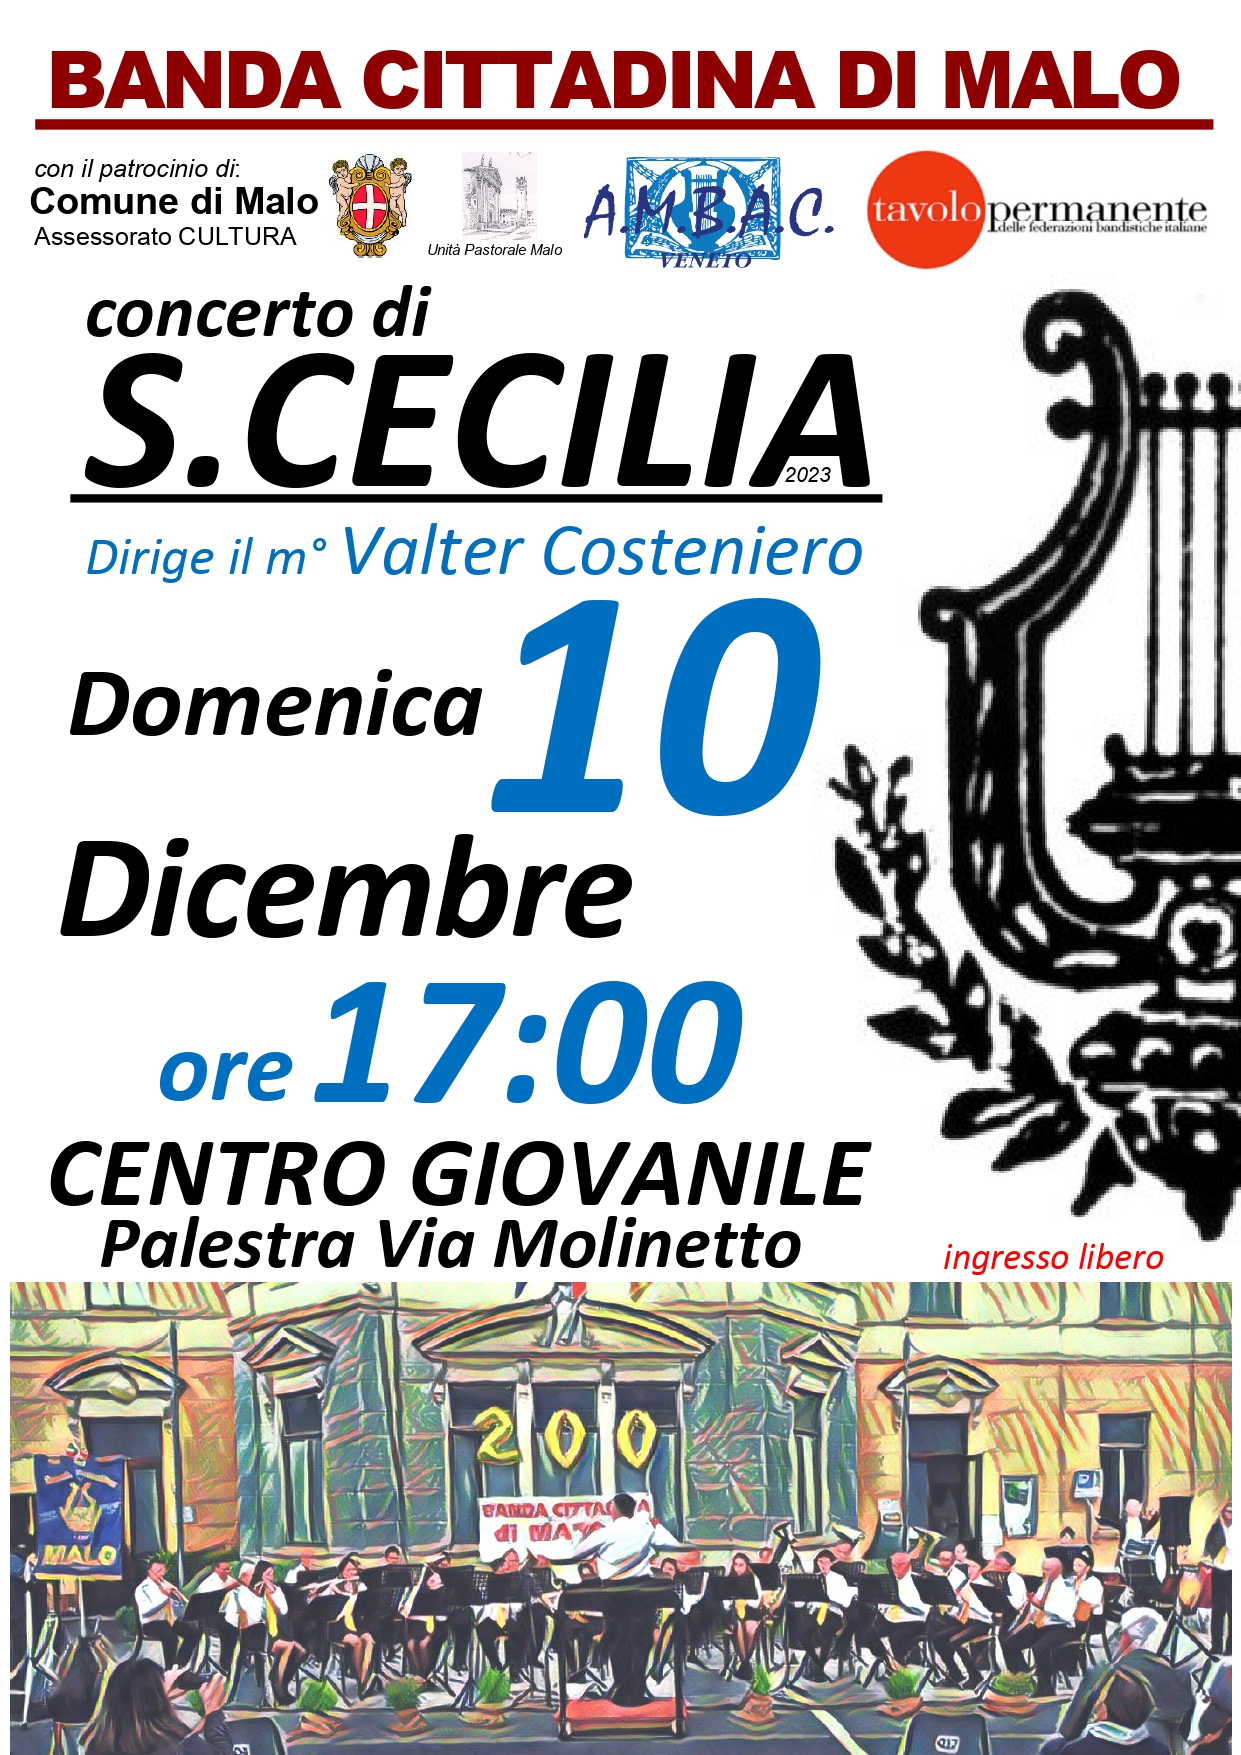 Concerto di Santa Cecilia - Banda Cittadina di Malo.